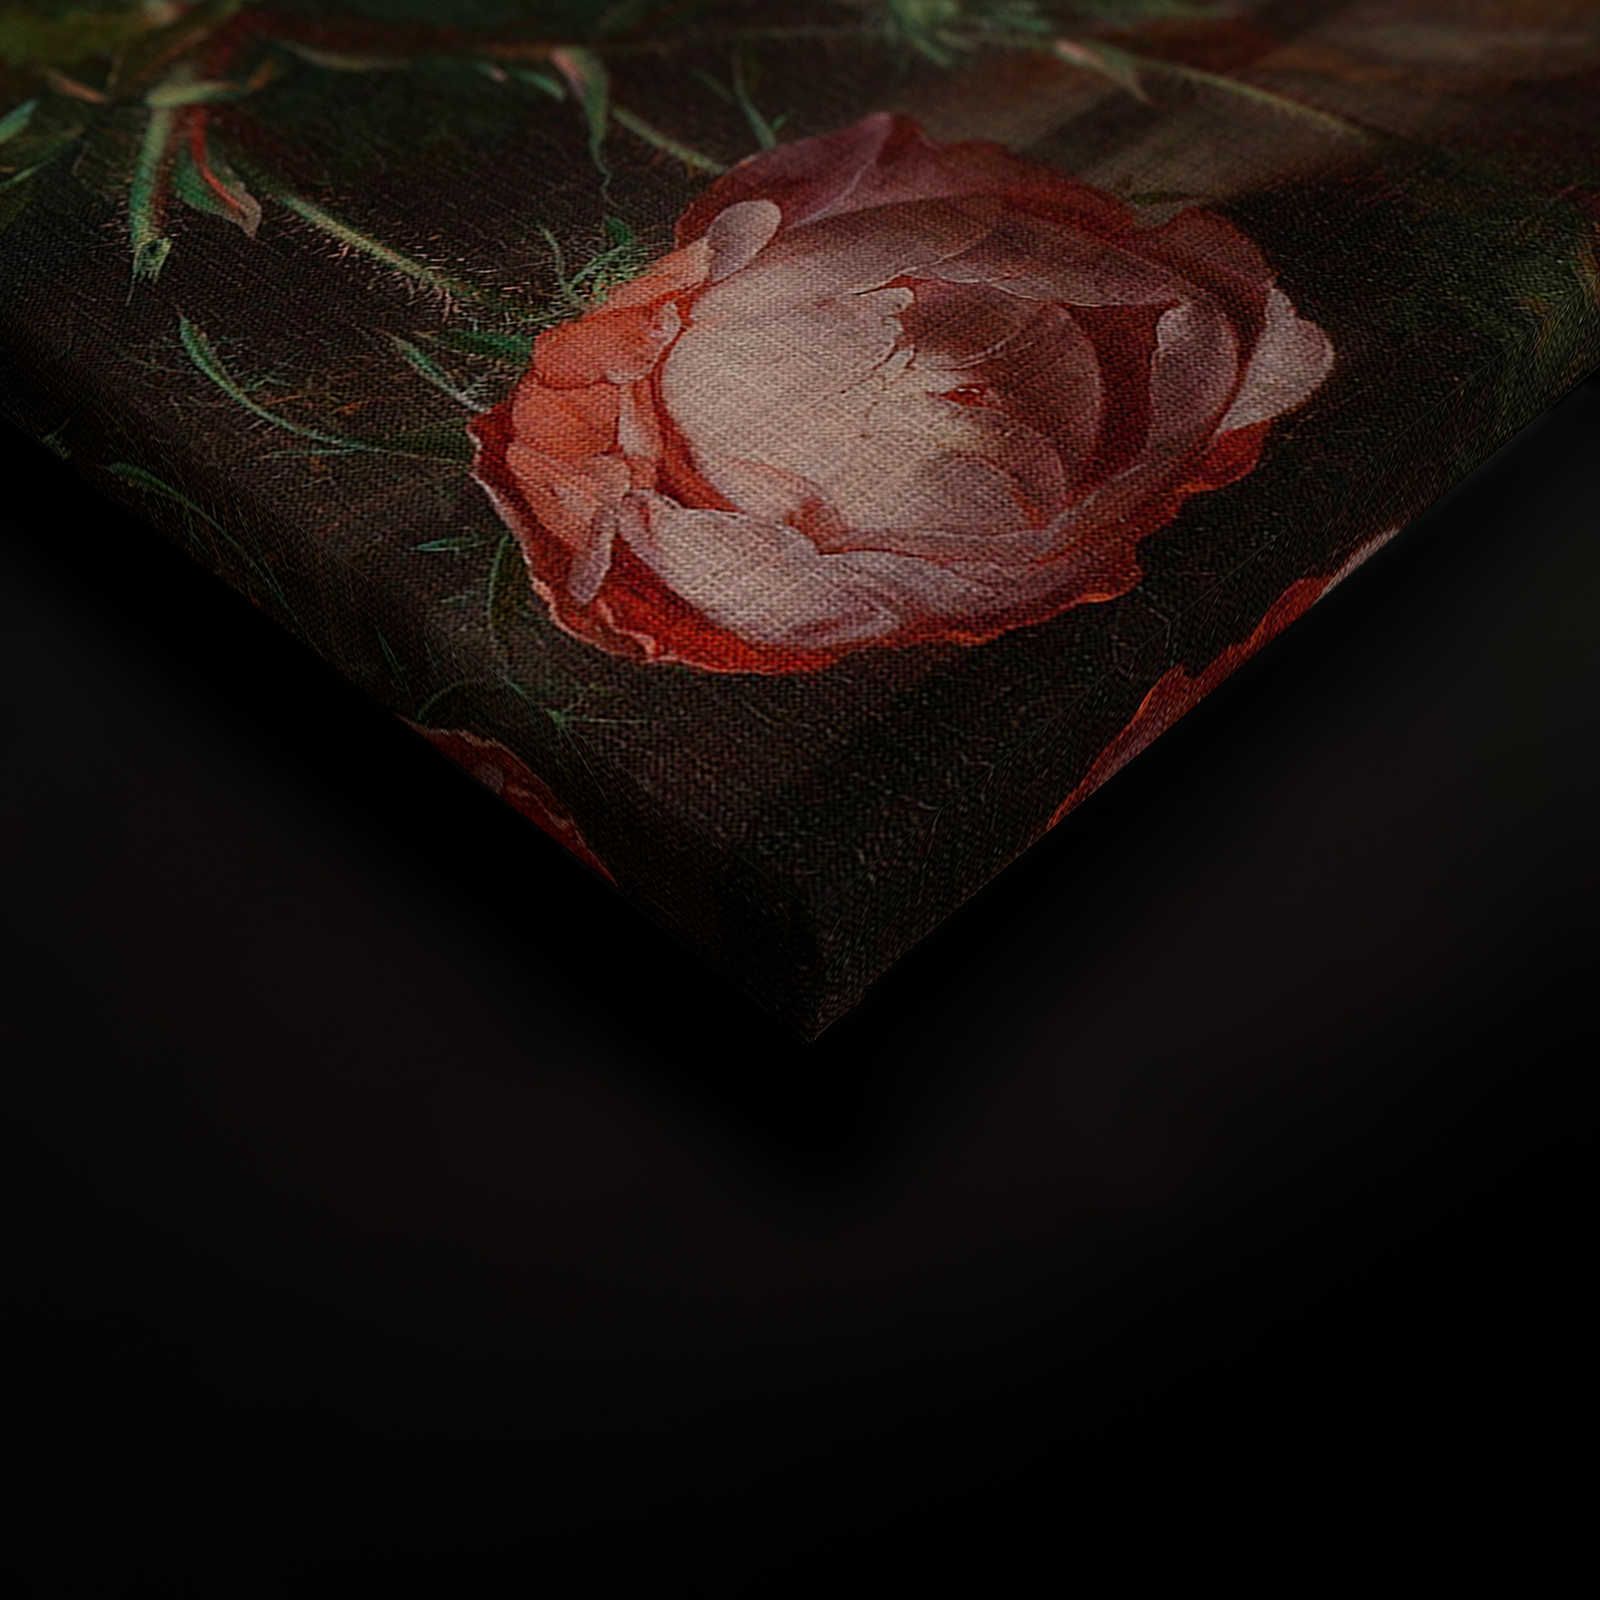             Artists Studio 3 - Peinture sur toile de fleurs Naturel morte - 0,60 m x 0,90 m
        